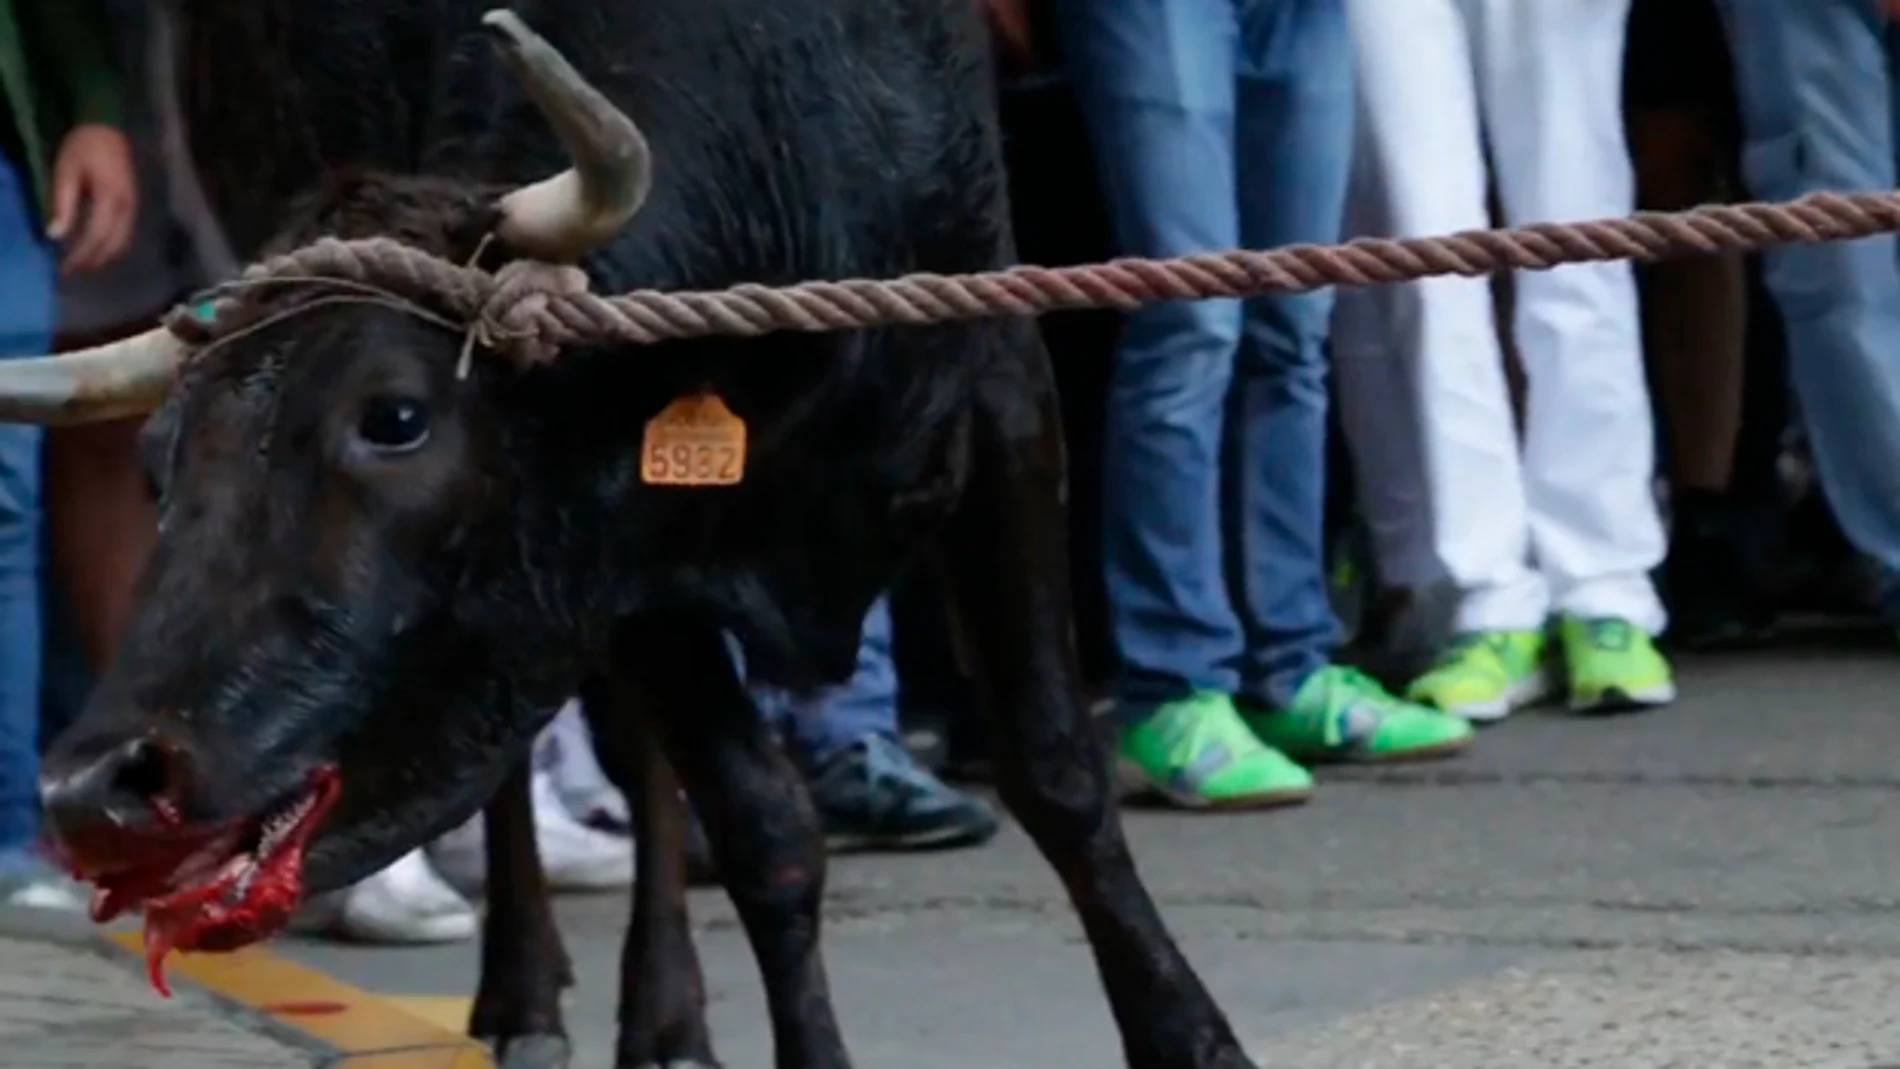 Imagen de un toro en un festejo